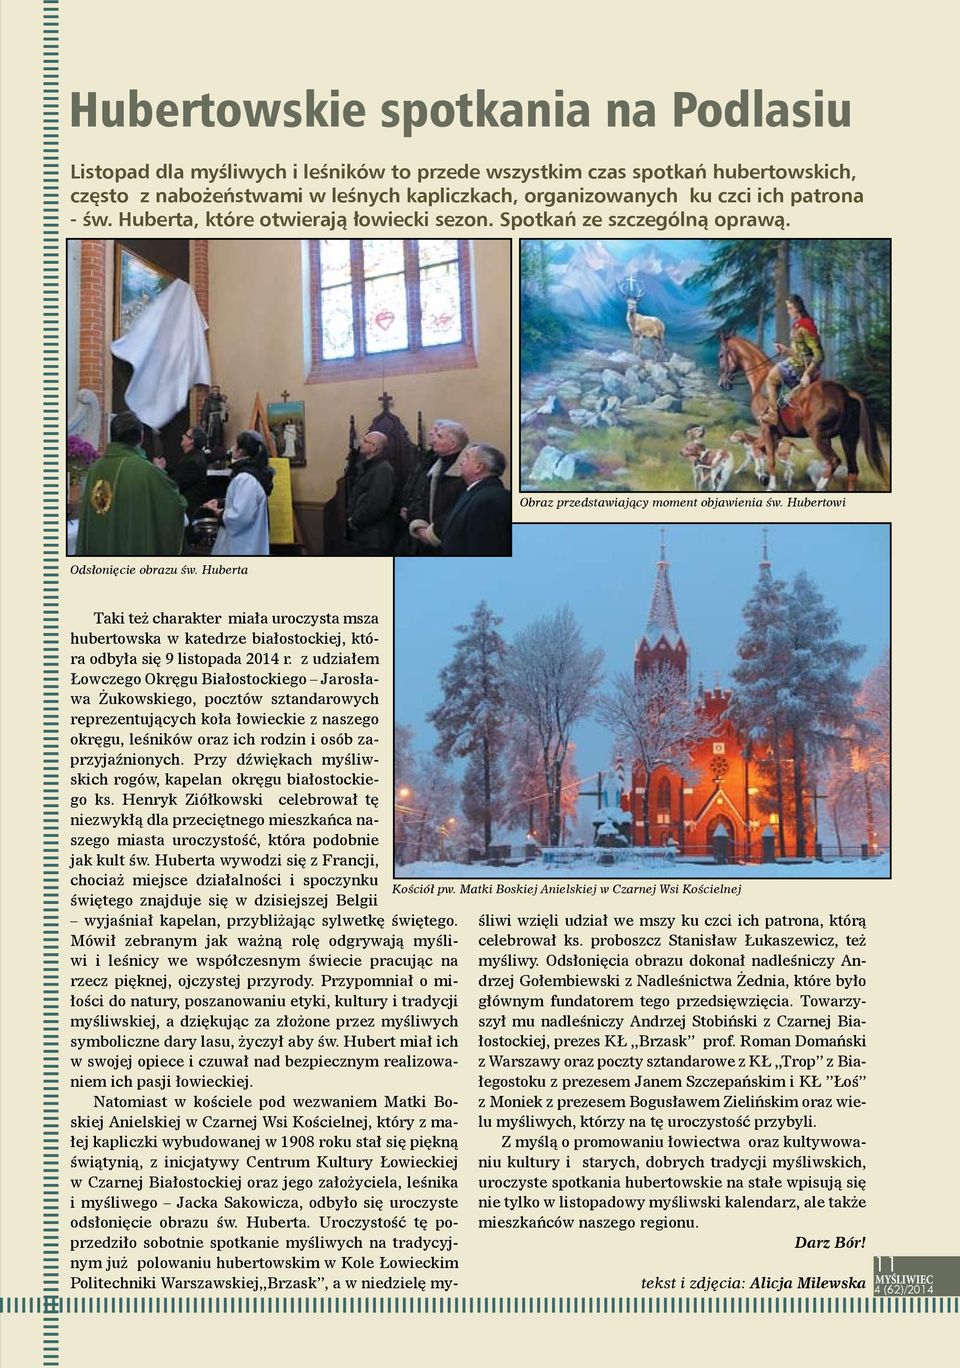 Matki Boskiej Anielskiej w Czarnej Wsi Kościelnej Taki też charakter miała uroczysta msza hubertowska w katedrze białostockiej, która odbyła się 9 listopada 2014 r.